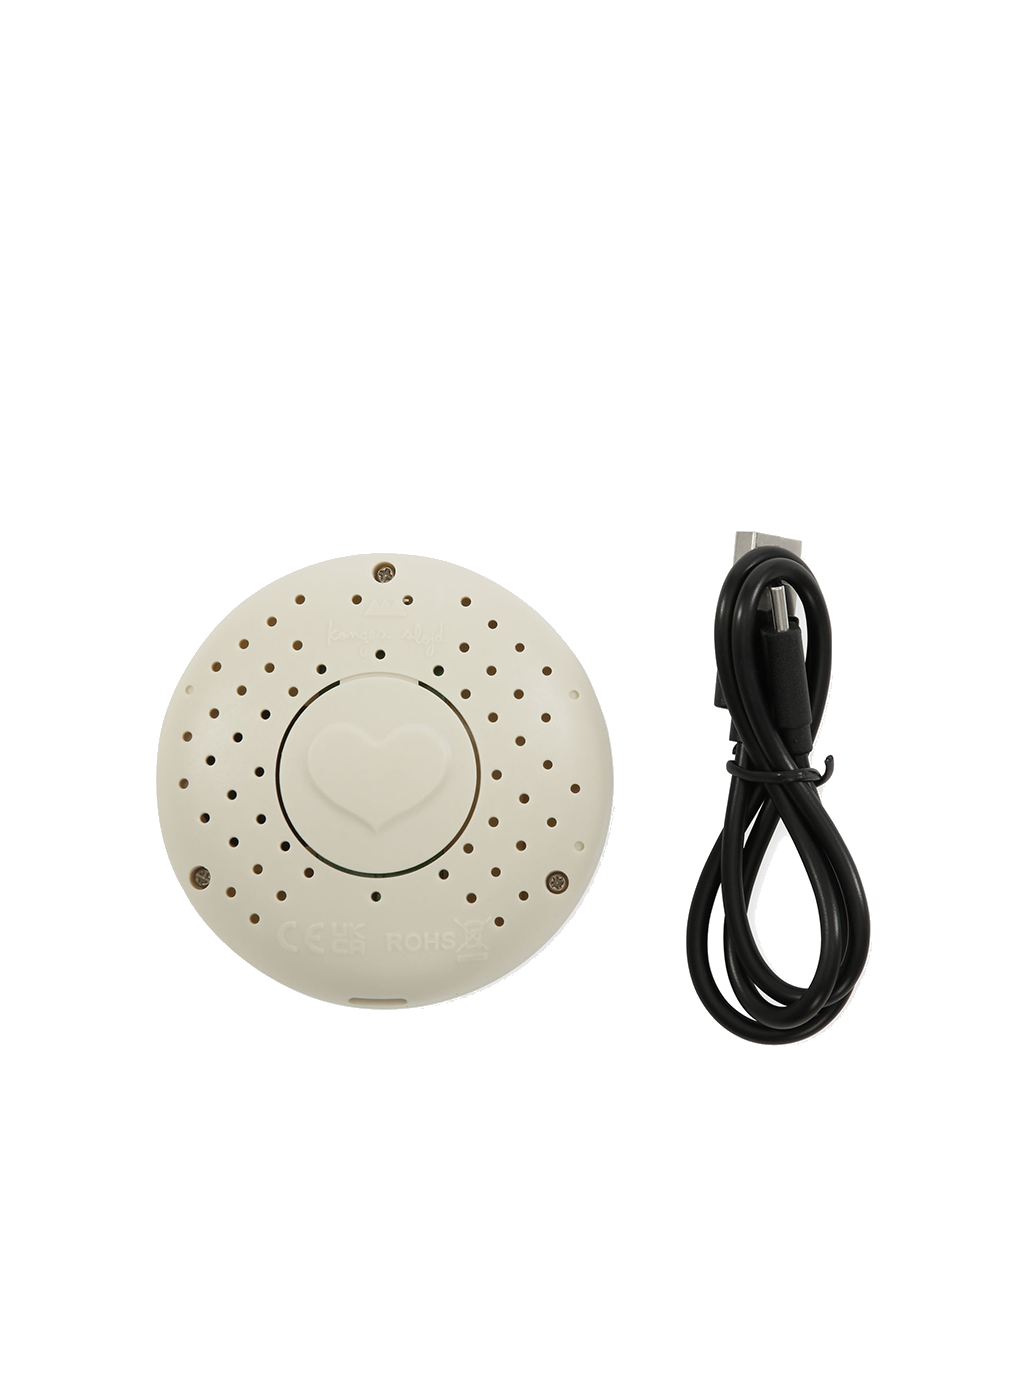 Lampe en peluche avec haut-parleur Bluetooth